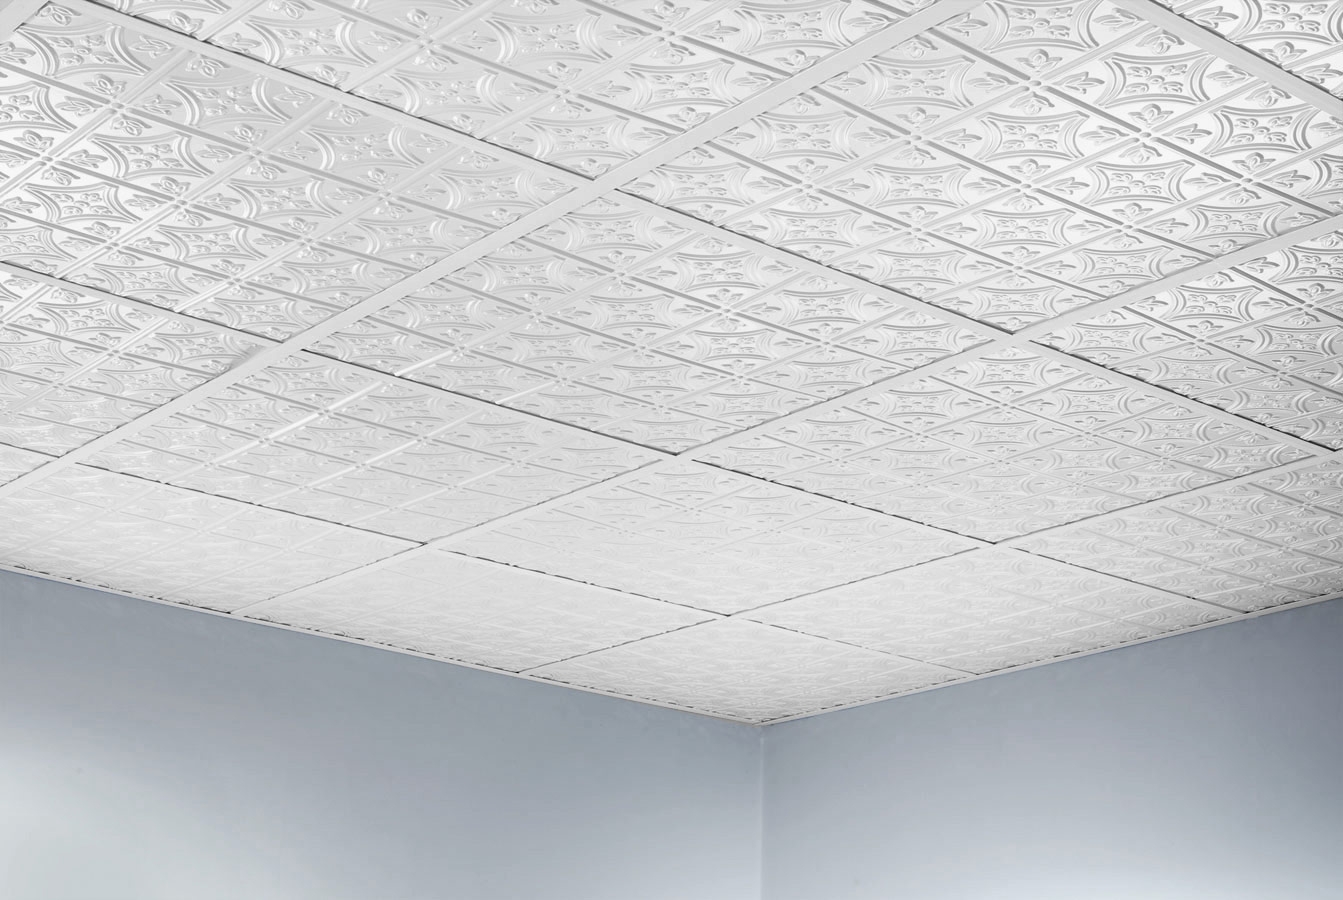 Frp Drop Ceiling Tiles Frp Drop Ceiling Tiles ceiling ceiling tiles 2x4 acceptable ceiling tiles 2x4 menards 1343 X 900